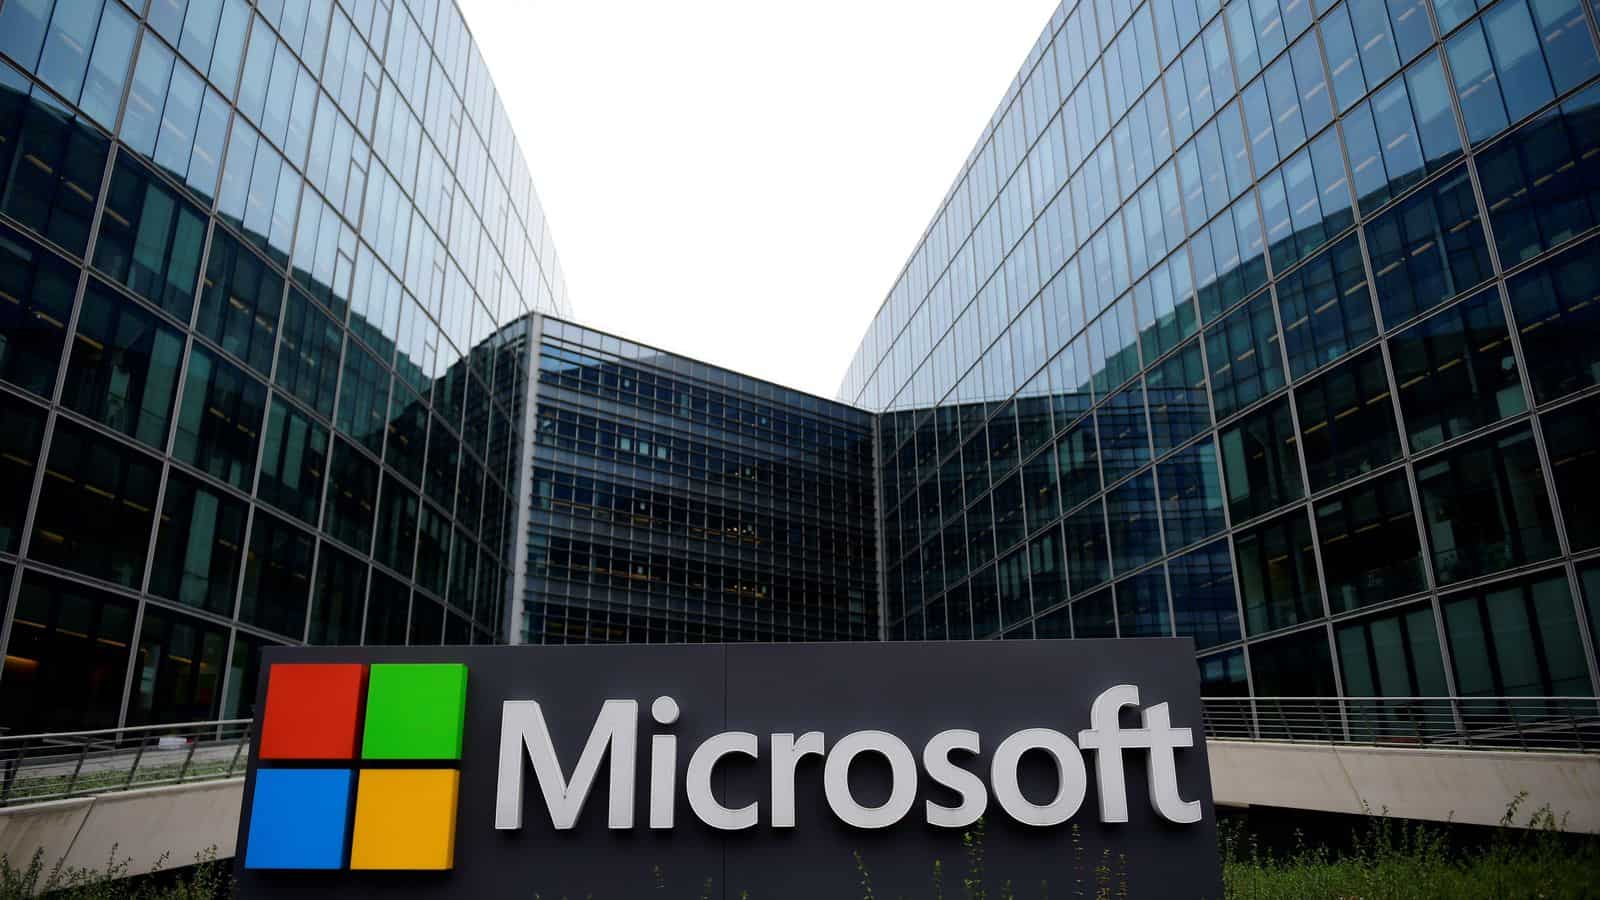 Microsoft plant 'speciaal evenement' in New York voor 21 september